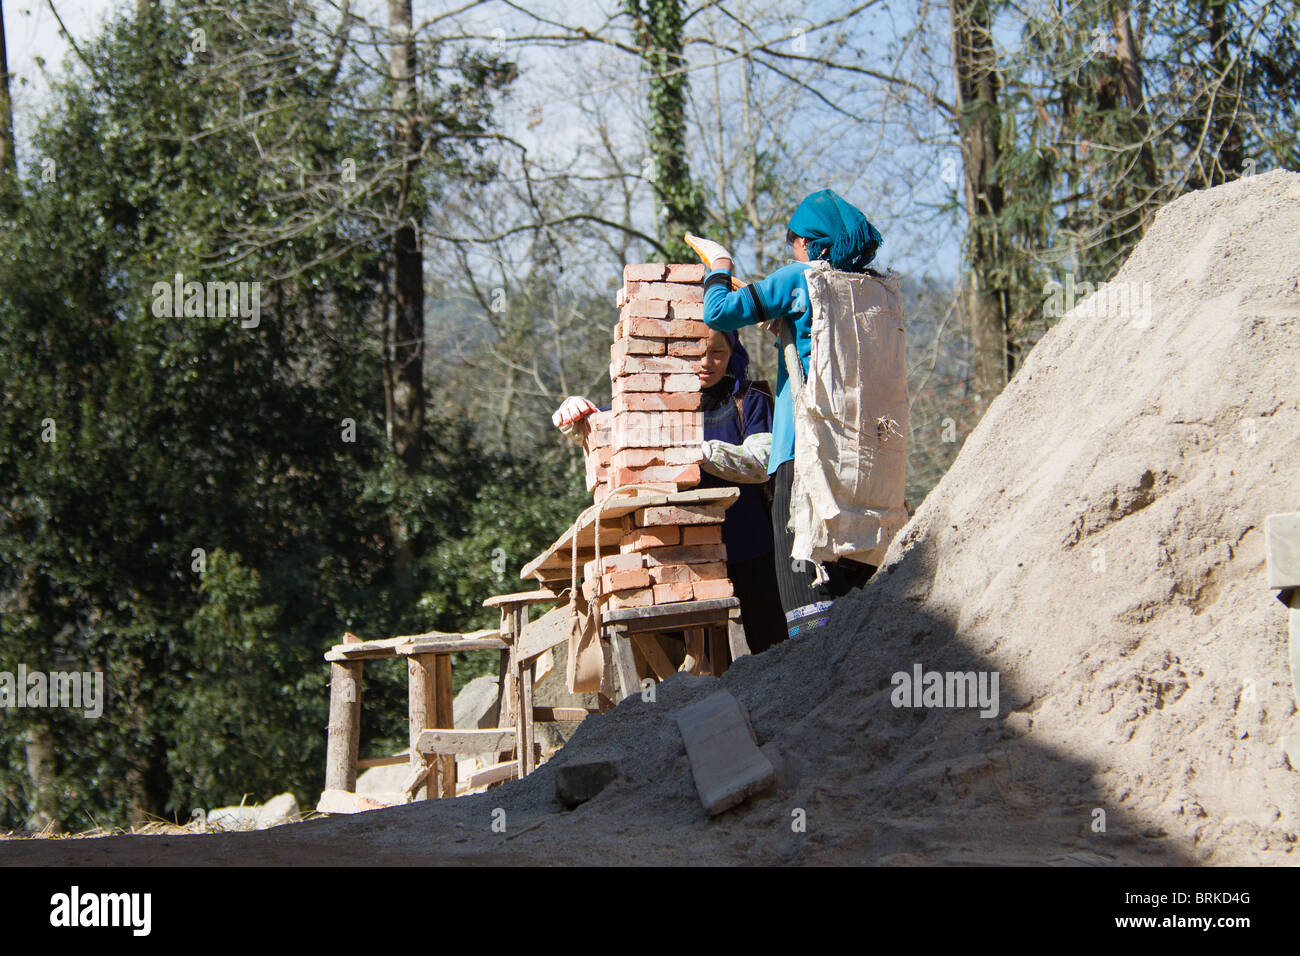 Une femme de la minorité chinoise se prépare à soulever et transporter une lourde charge de briques sur un chantier de construction. Banque D'Images